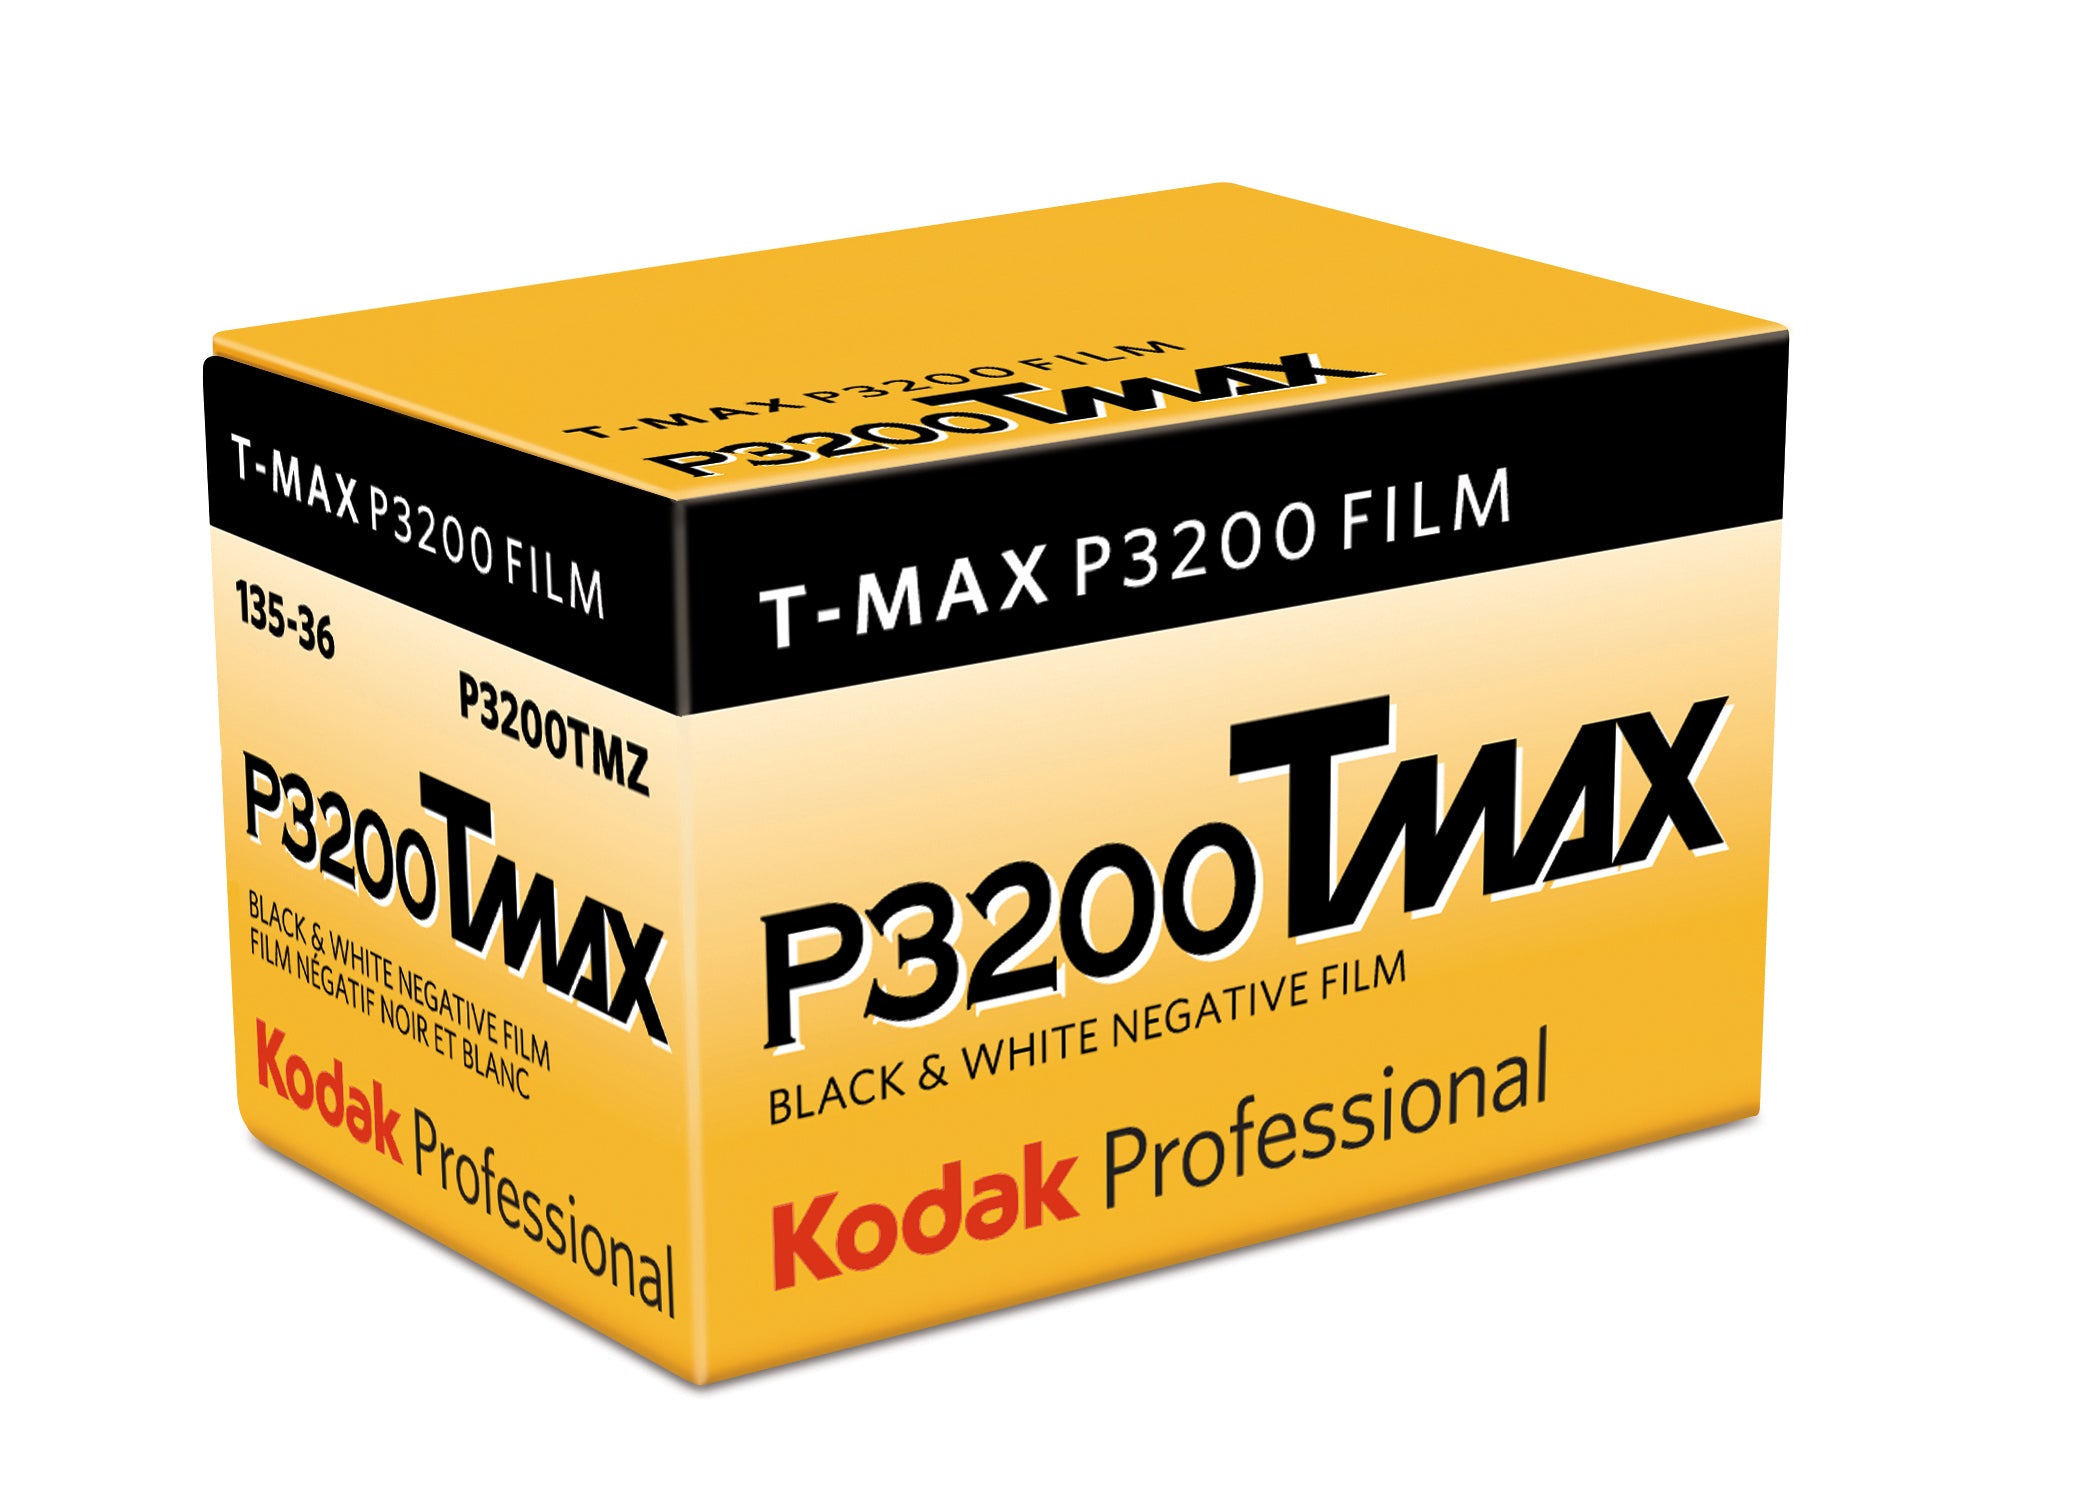 KODAK 135-36 T-MAX P3200 FILM